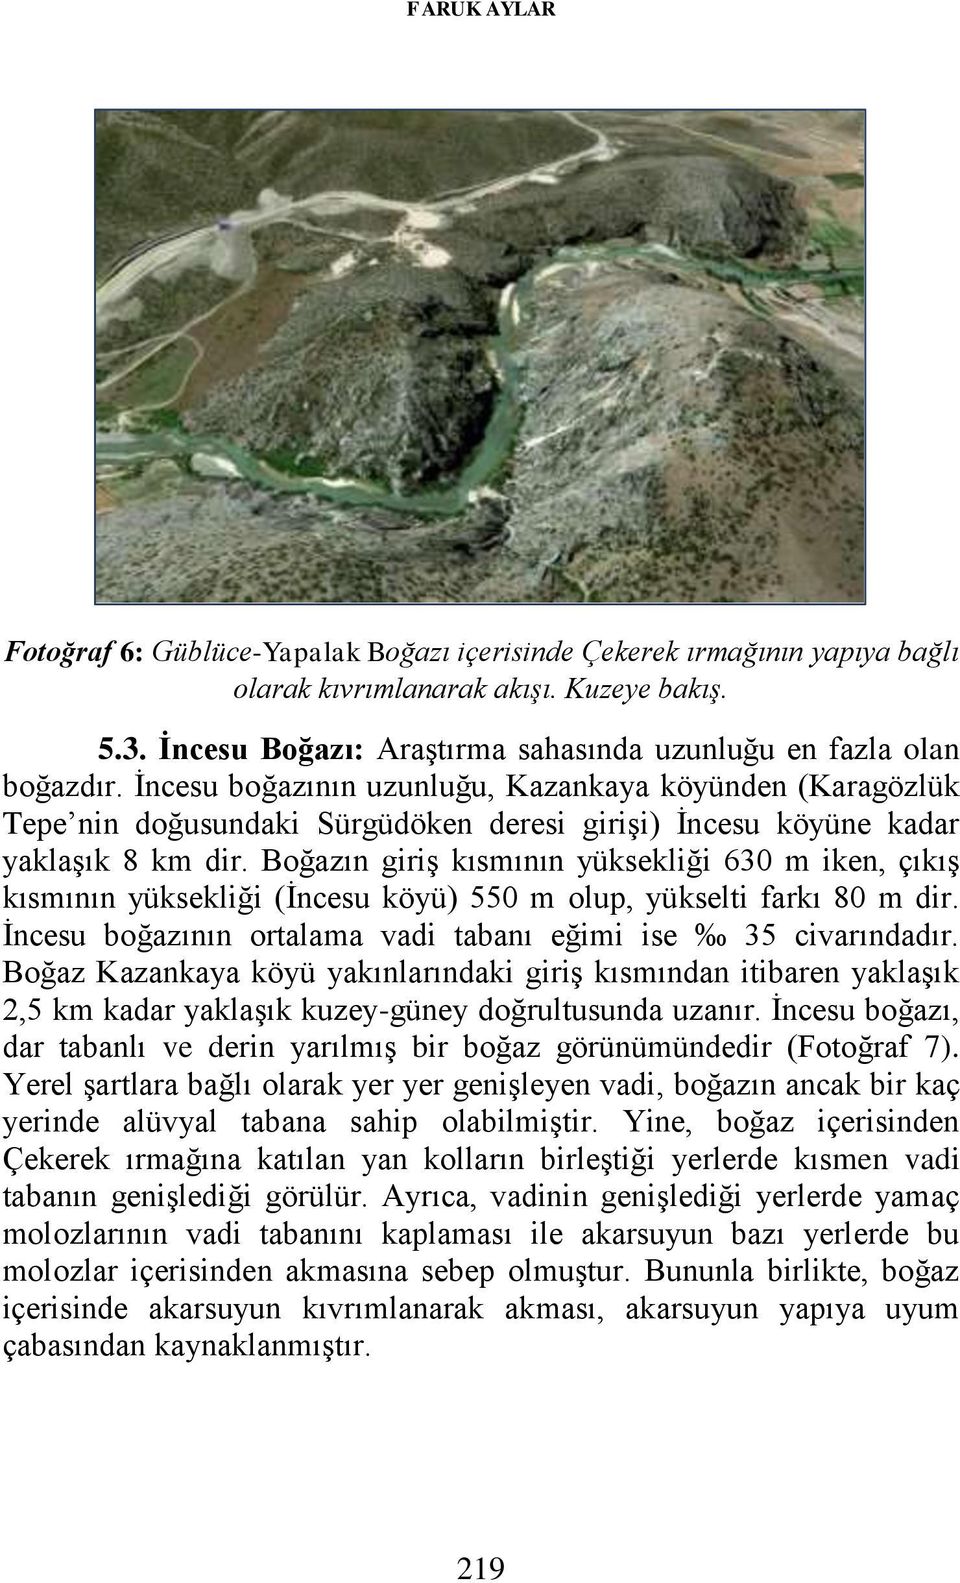 İncesu boğazının uzunluğu, Kazankaya köyünden (Karagözlük Tepe nin doğusundaki Sürgüdöken deresi girişi) İncesu köyüne kadar yaklaşık 8 km dir.